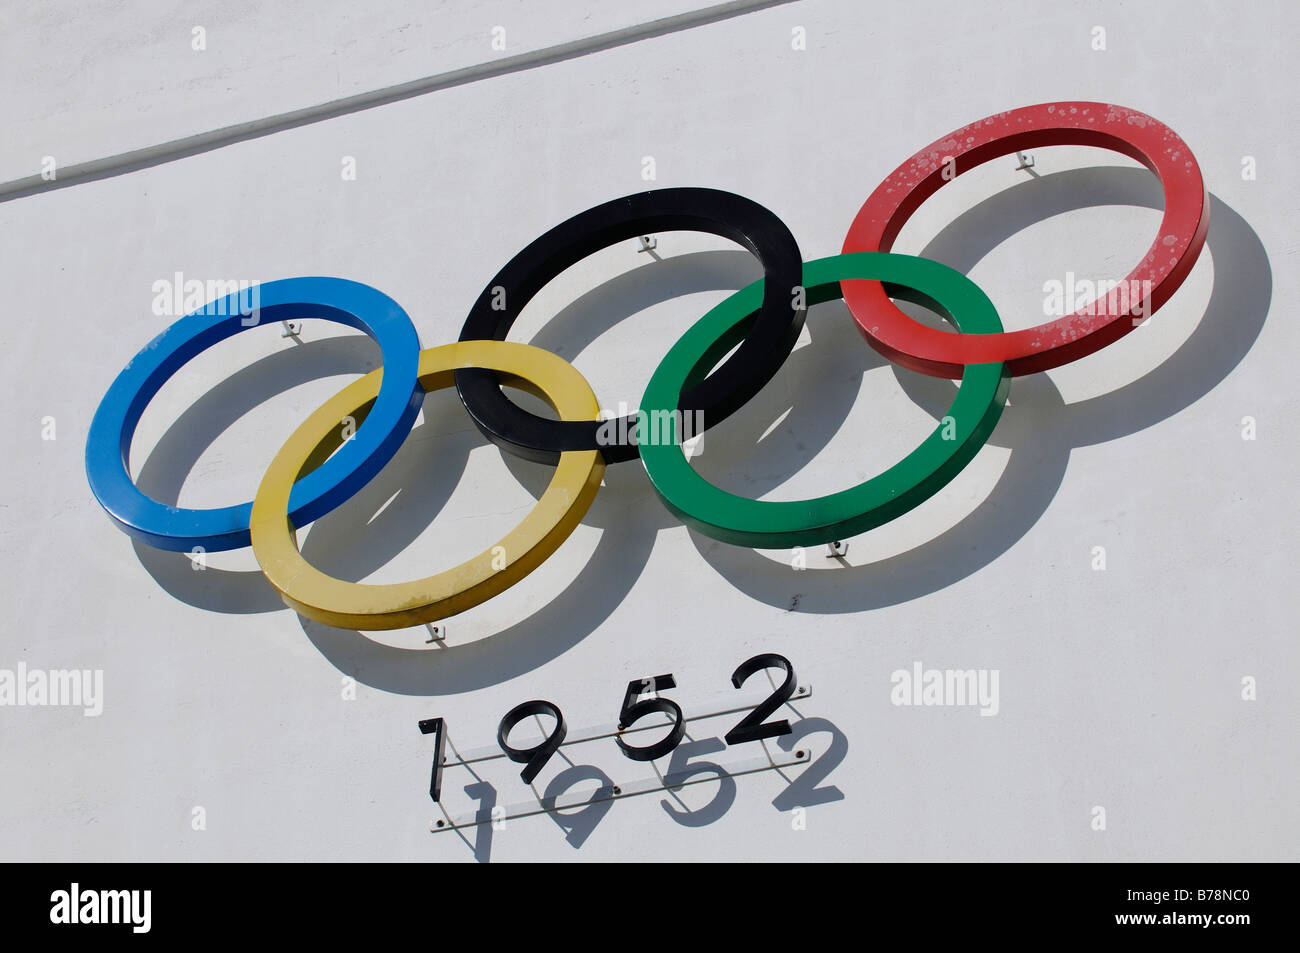 Los anillos olímpicos de 1952, el estadio Olímpico, Helsinki, Finlandia, Europa Foto de stock